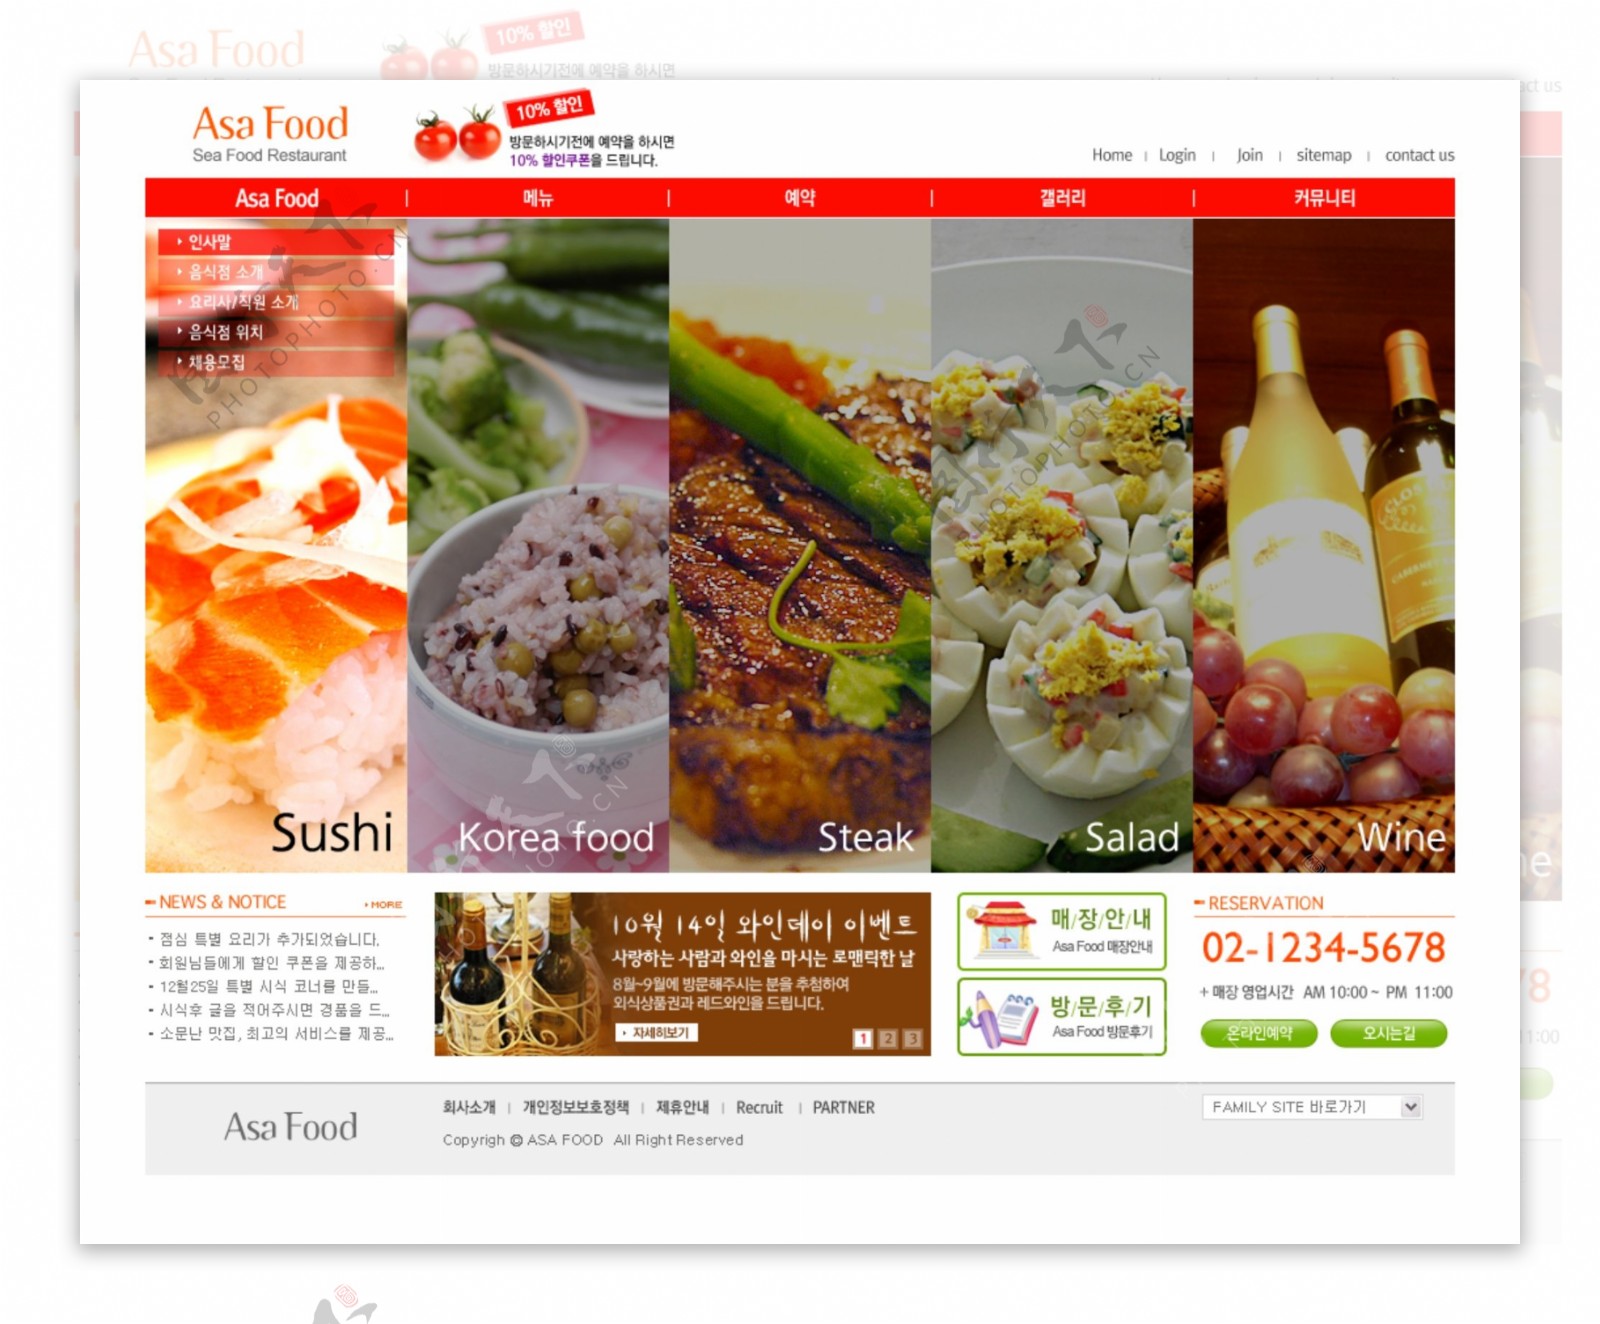 韩国网页模板白色系or017包括2个主页5个次级页面图片